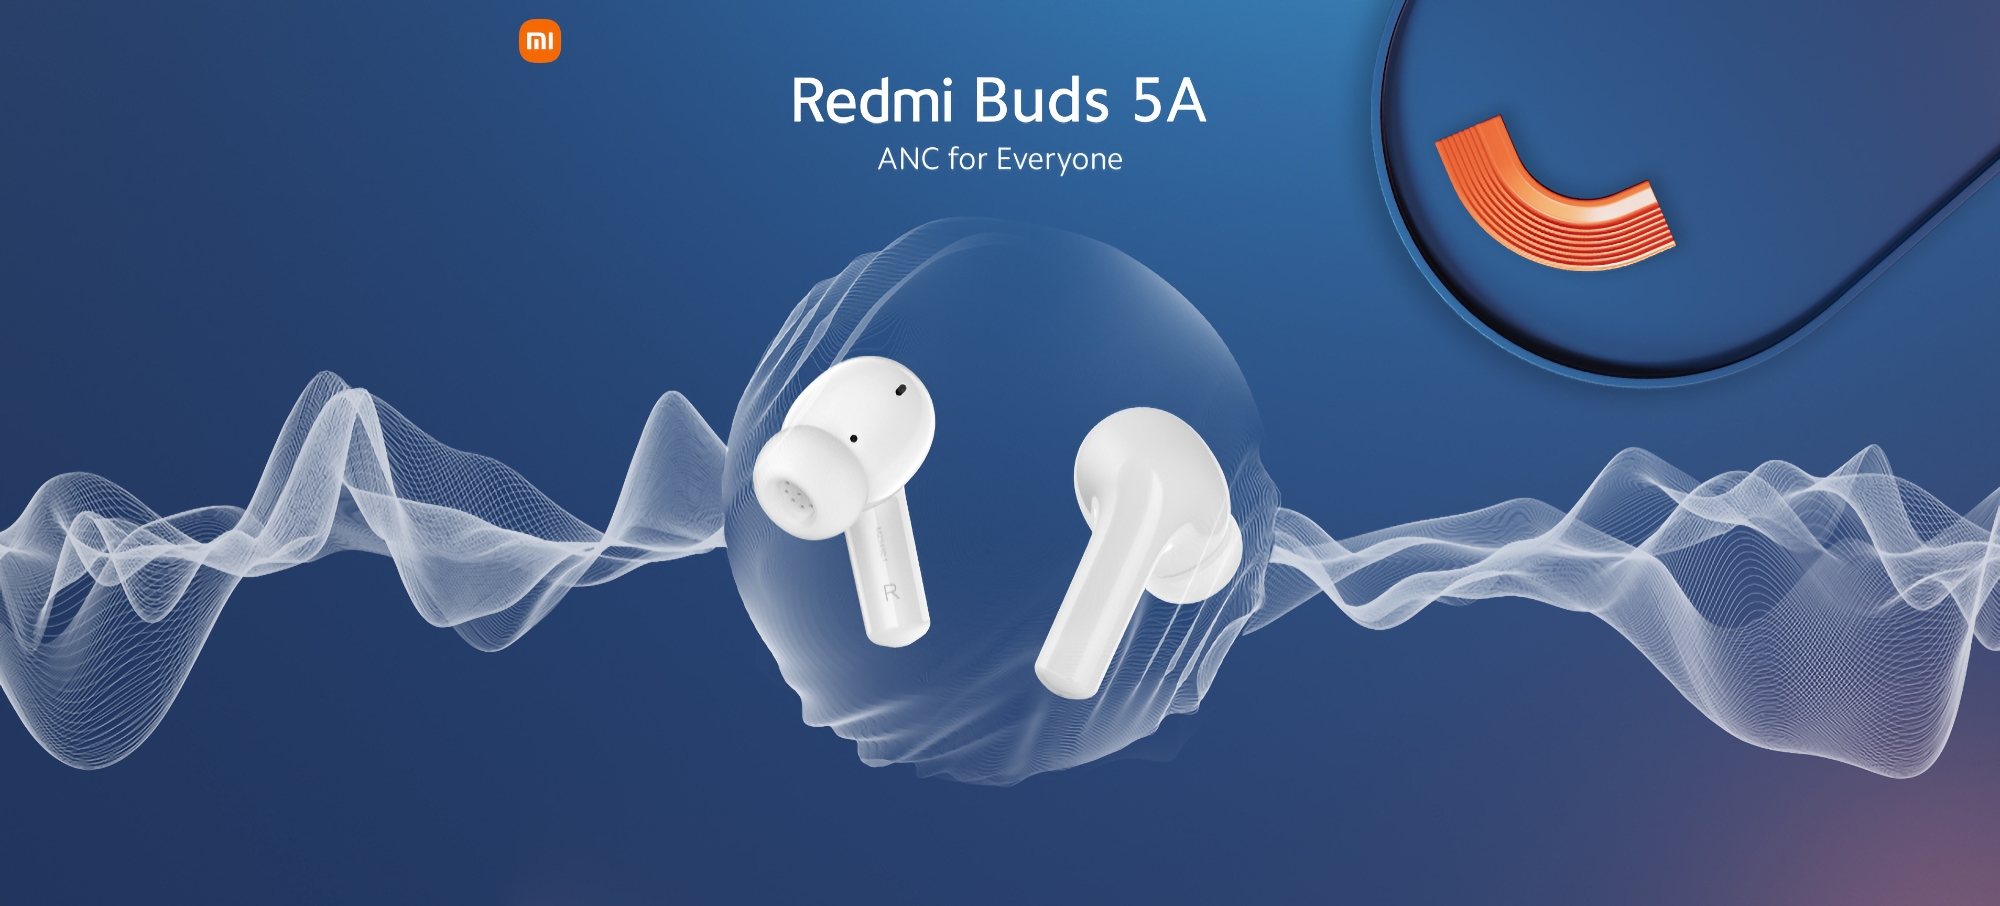 Xiaomi onthult de budget Redmi Buds 5A koptelefoon met ANC en Google Fast Pair functie op 23 april